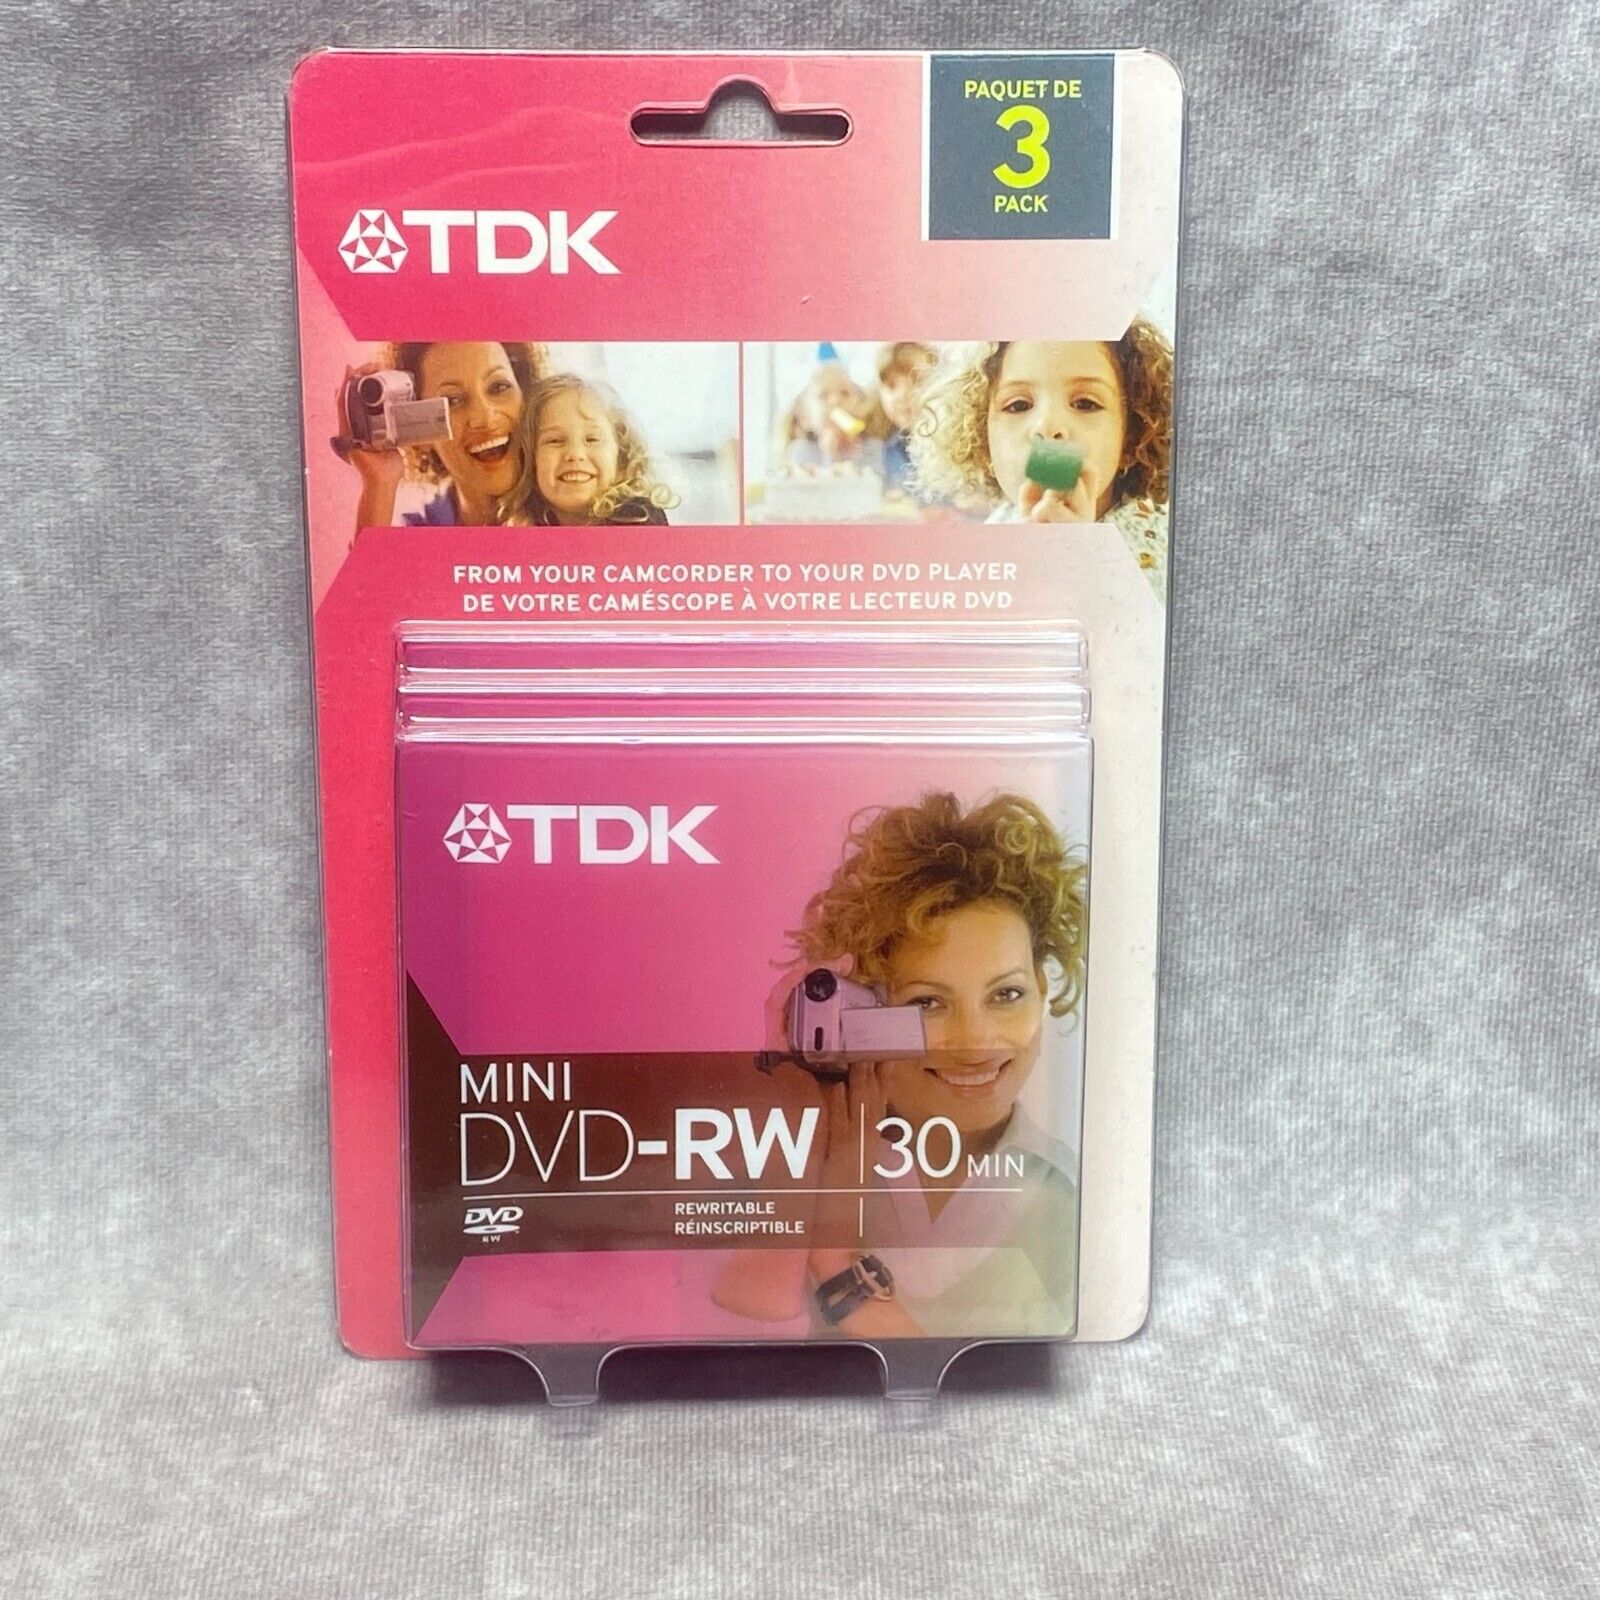 TDK Mini DVD-RW 30 Min Rewritable 3 Pack